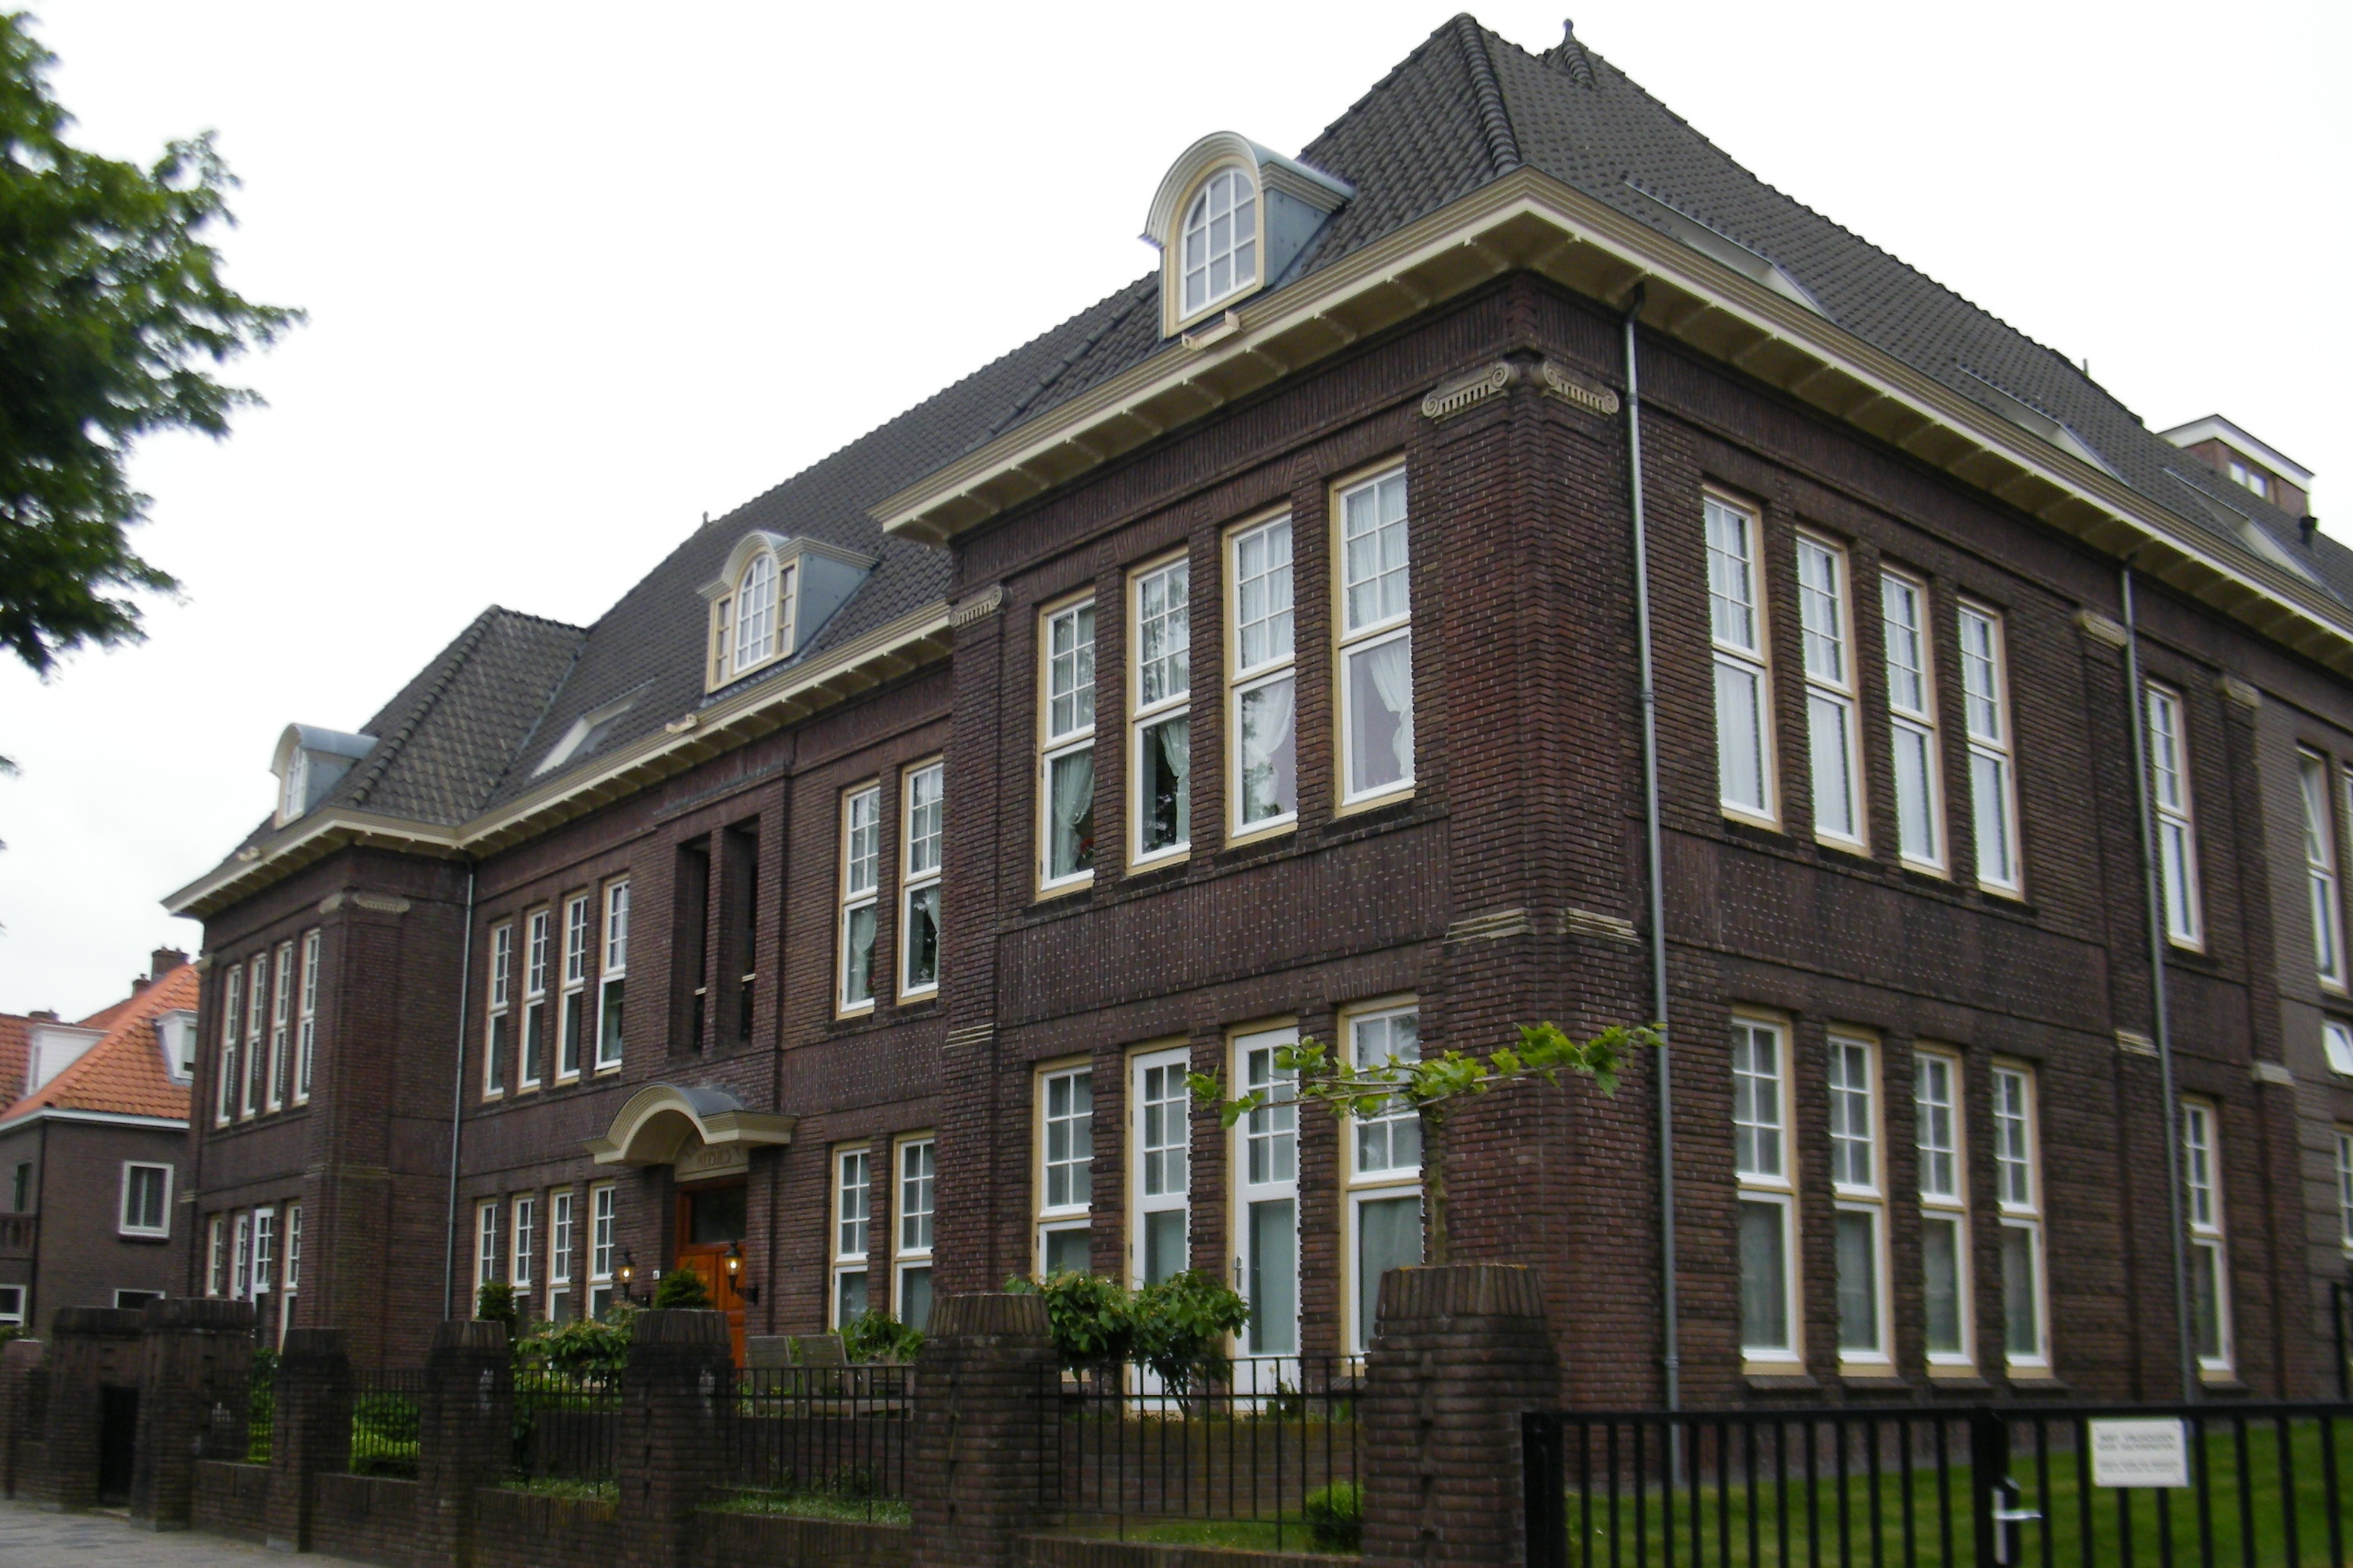 Vakschool voor Meisjes Harderwijk Stationslaan 